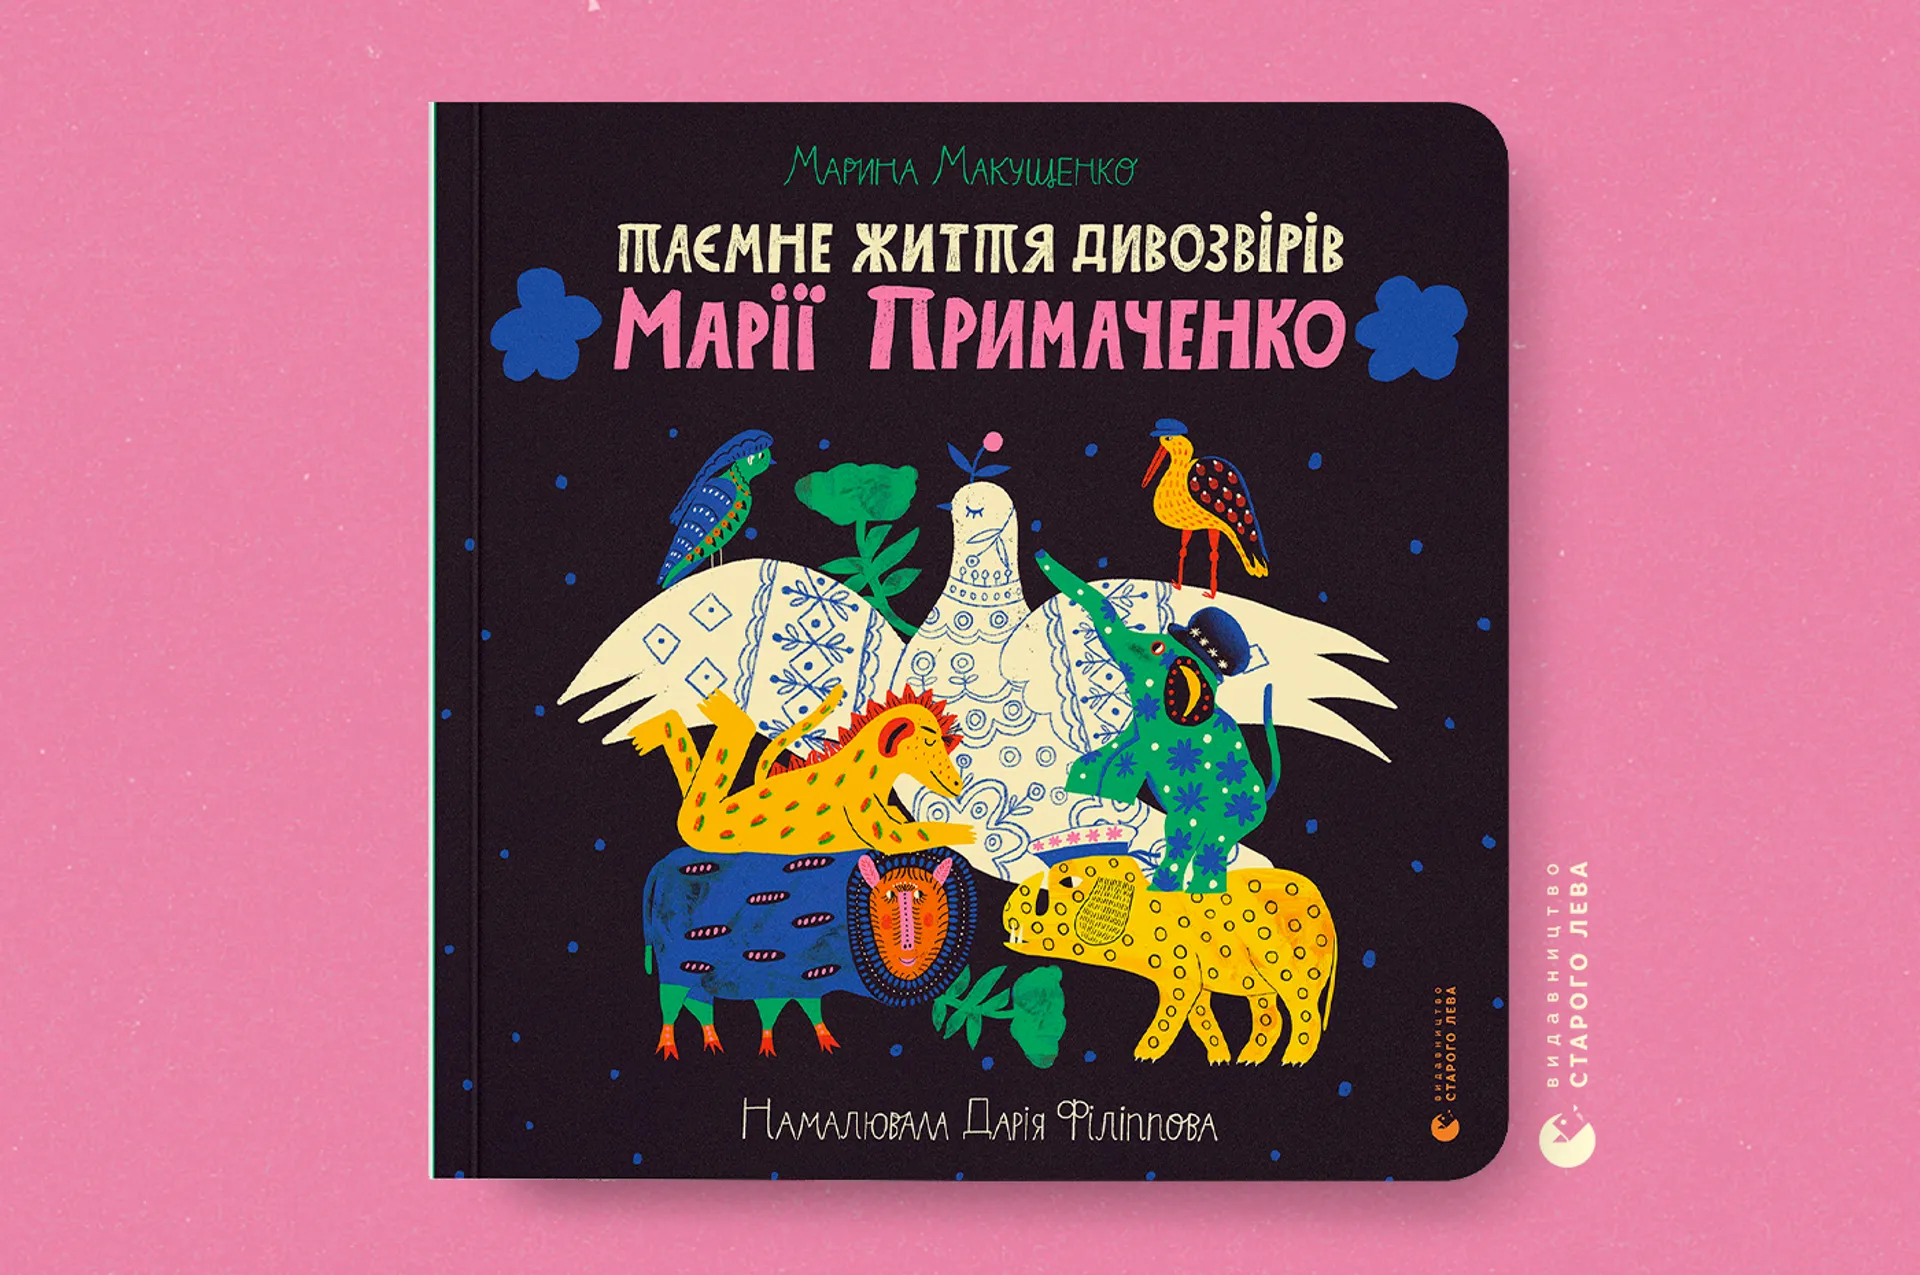 «Таємне життя дивозвірів Марії Примаченко»: зустрічаємо артвидання для всієї родини